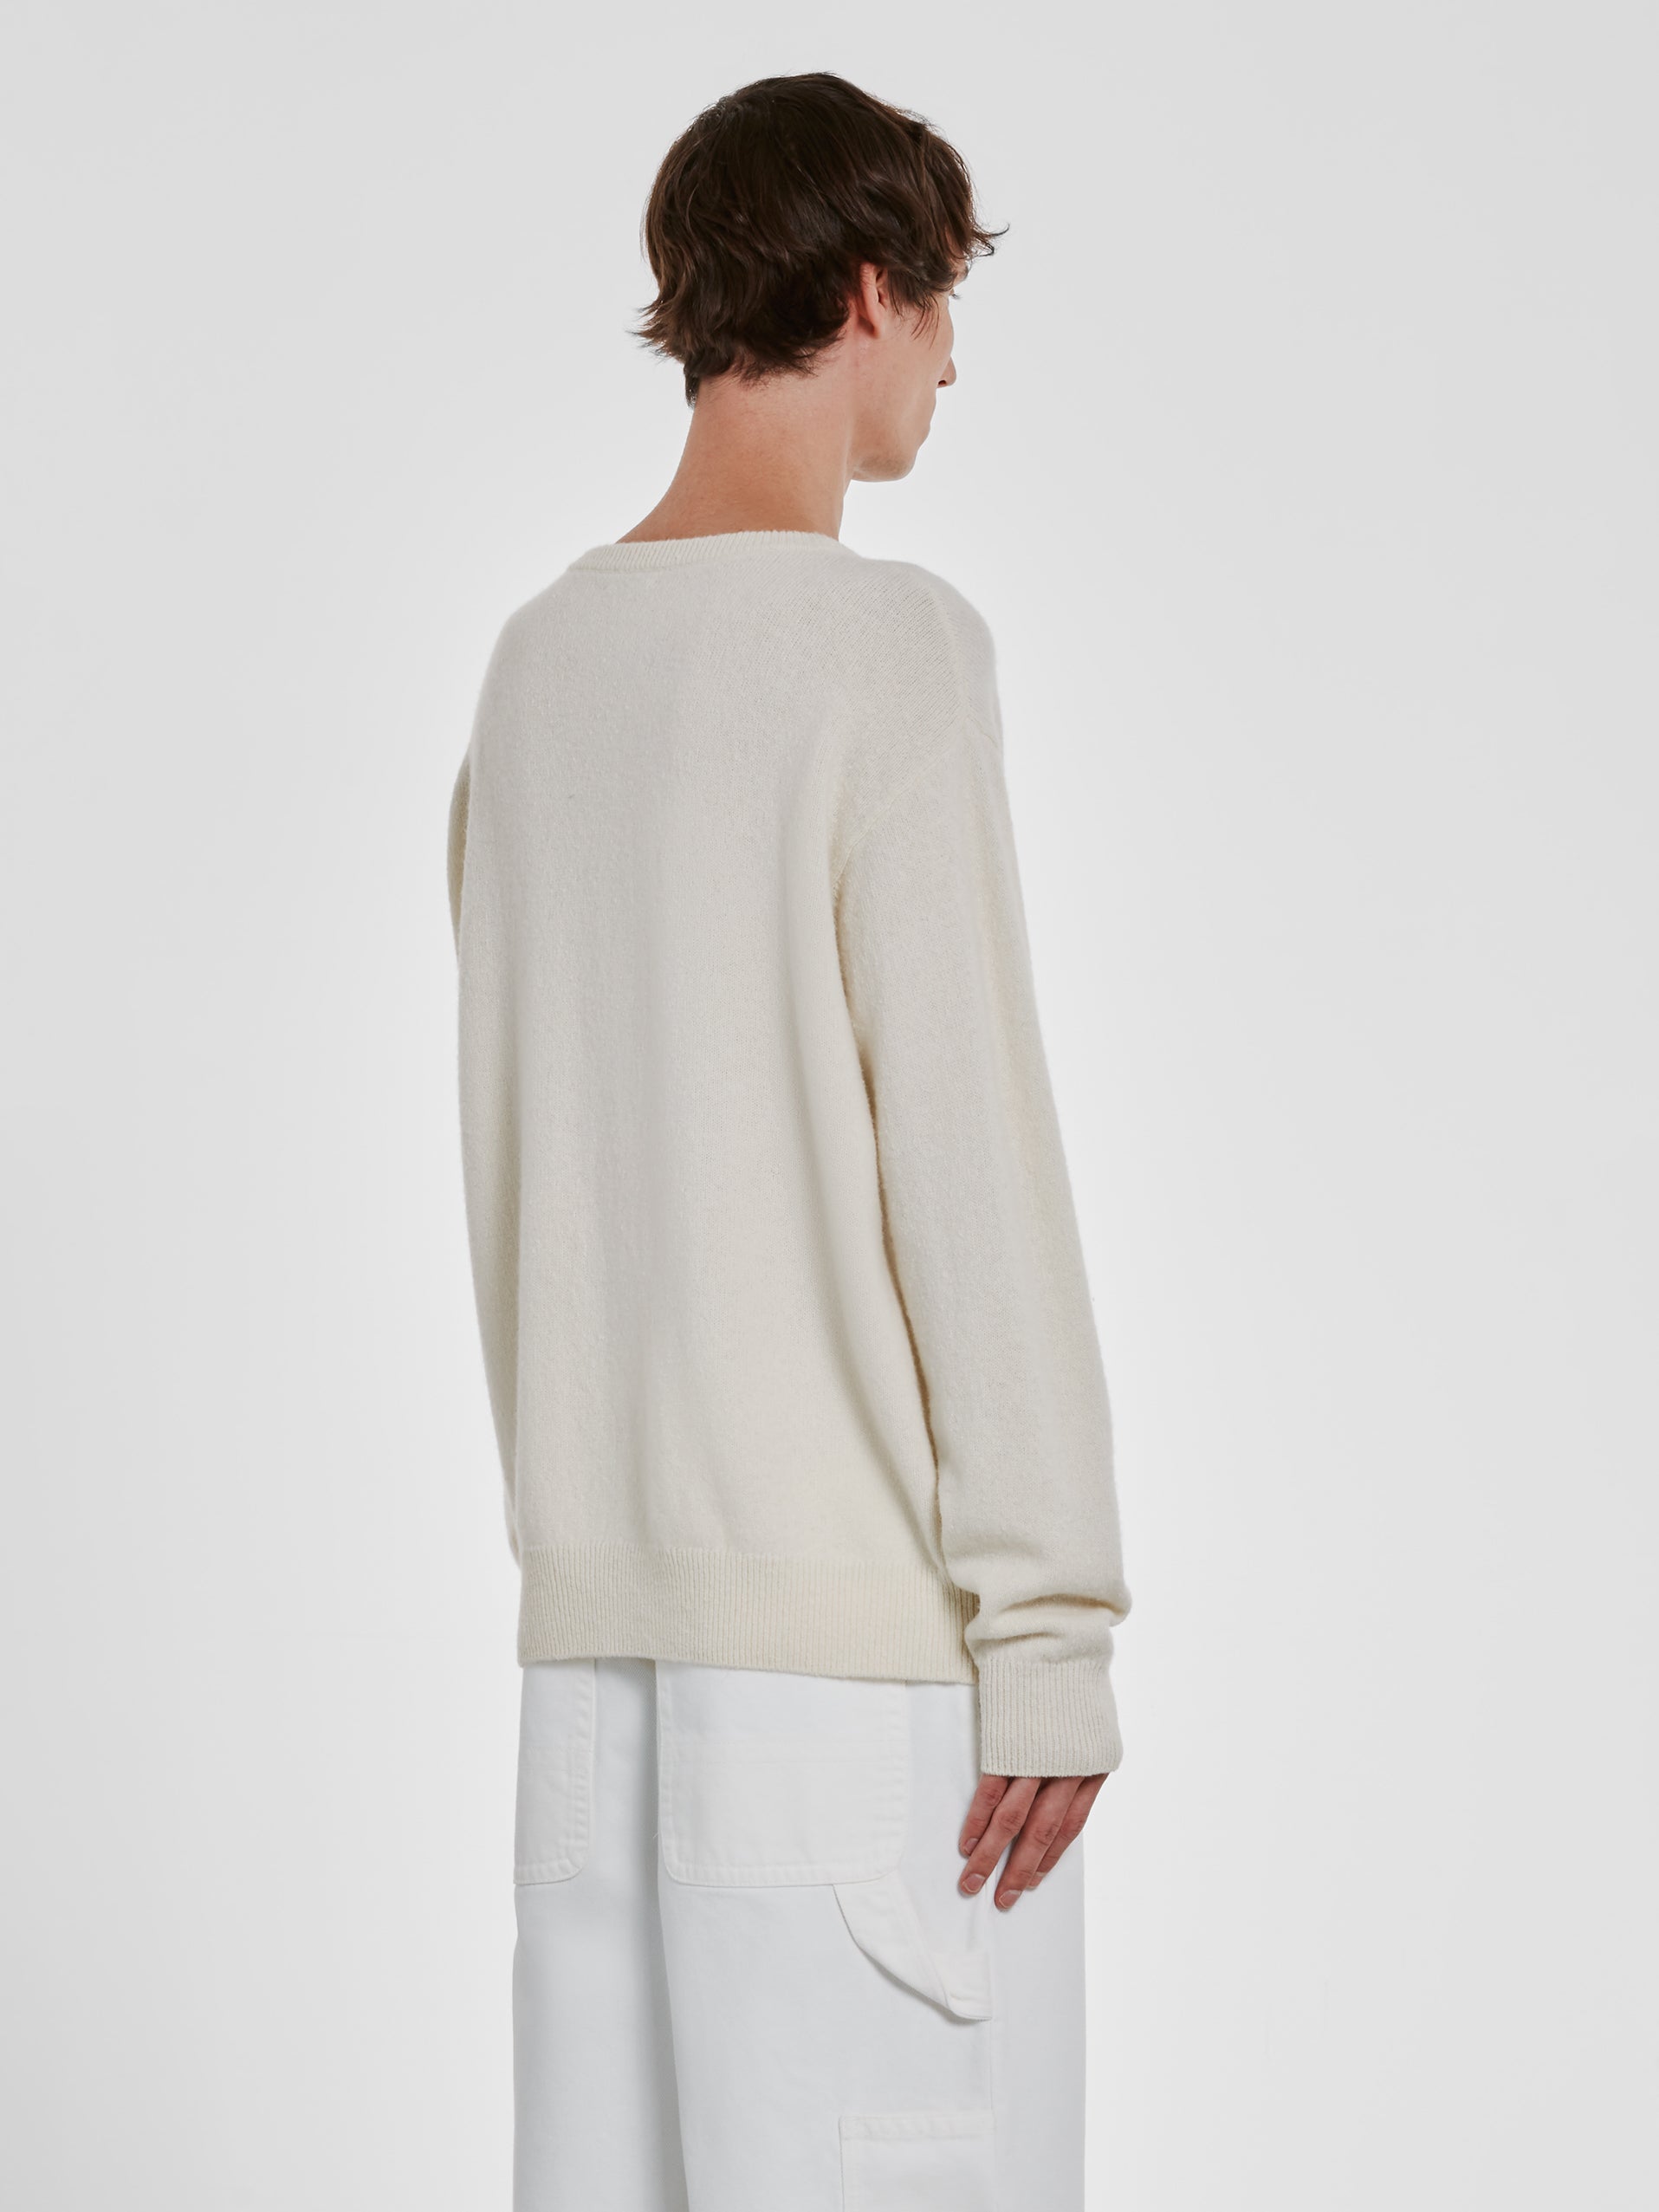 Dries Van Noten - Men’s Wool Sweater - (Ecru) view 3